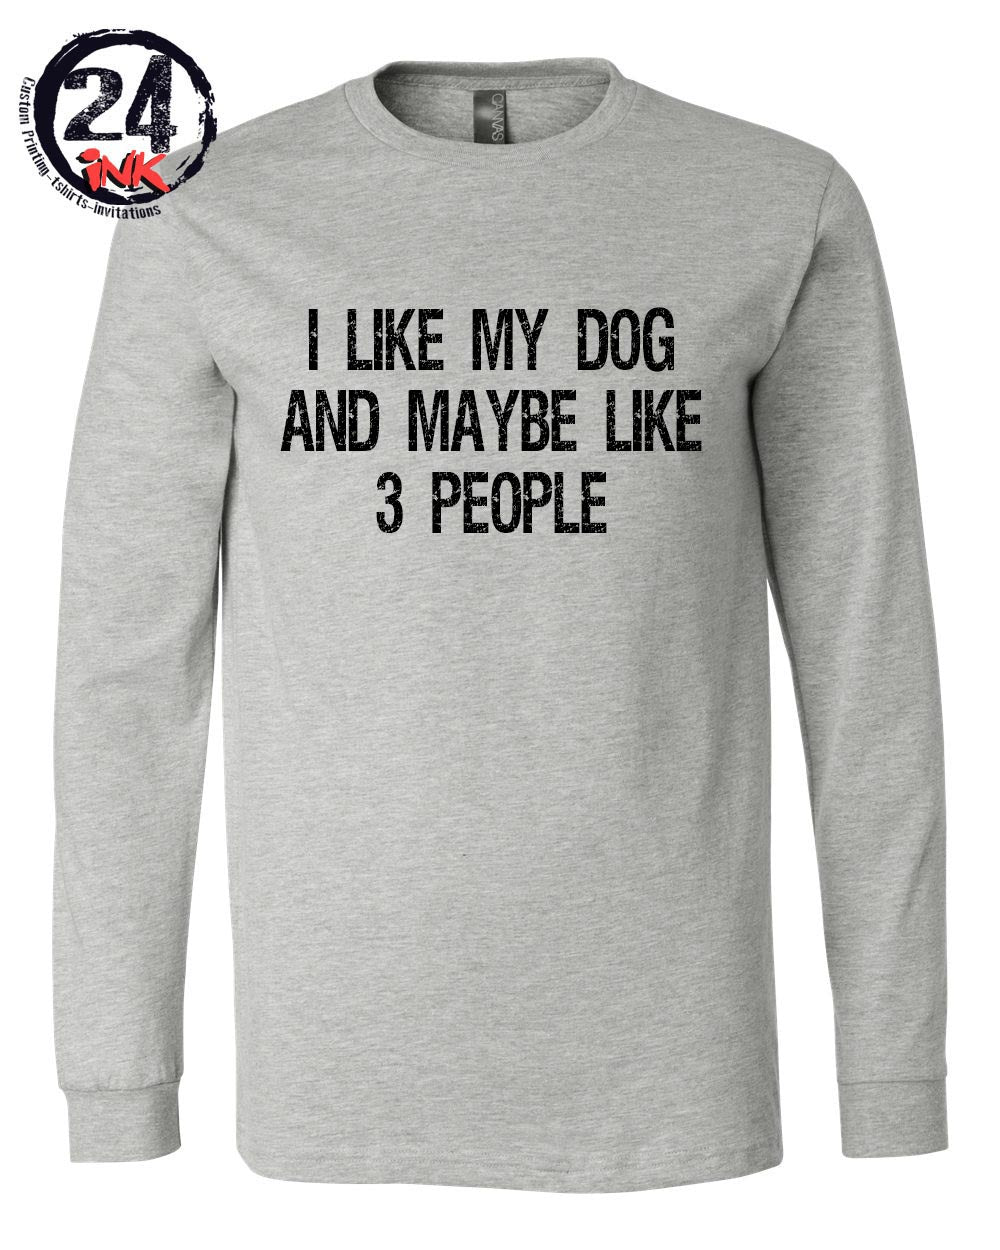 I like my dog and maybe like 3 people shirt